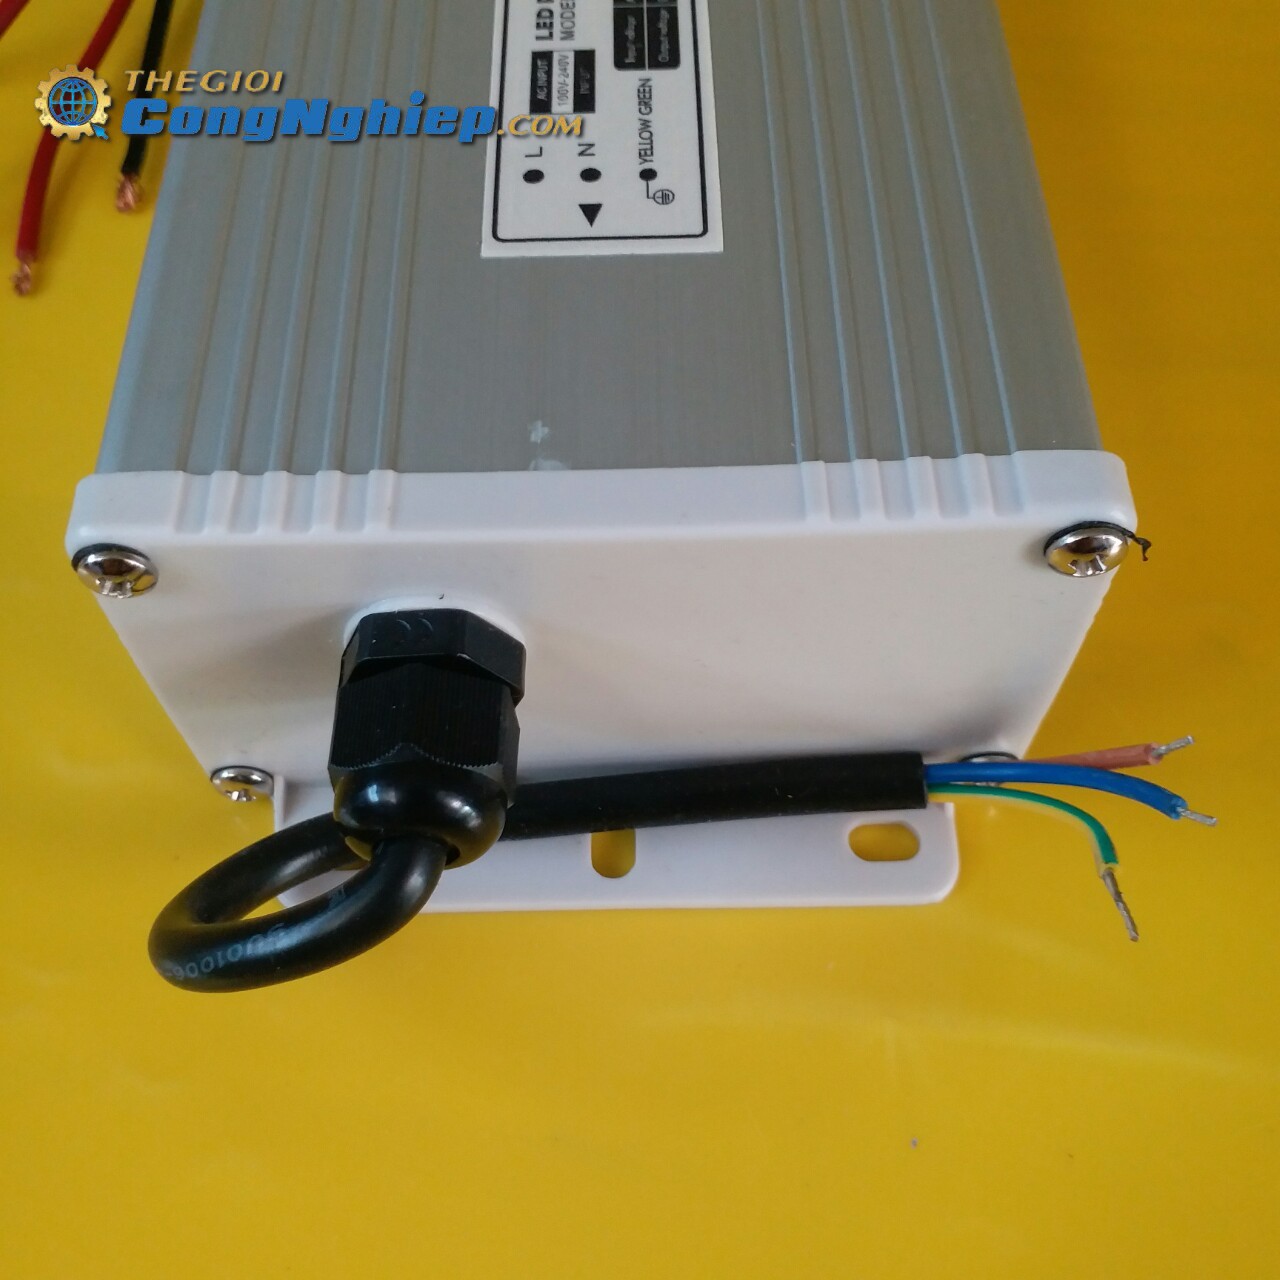 Nguồn 400W cho led dây JCVTECH FX400-H1V24, điện áp vào 220V, điện áp ra 24V